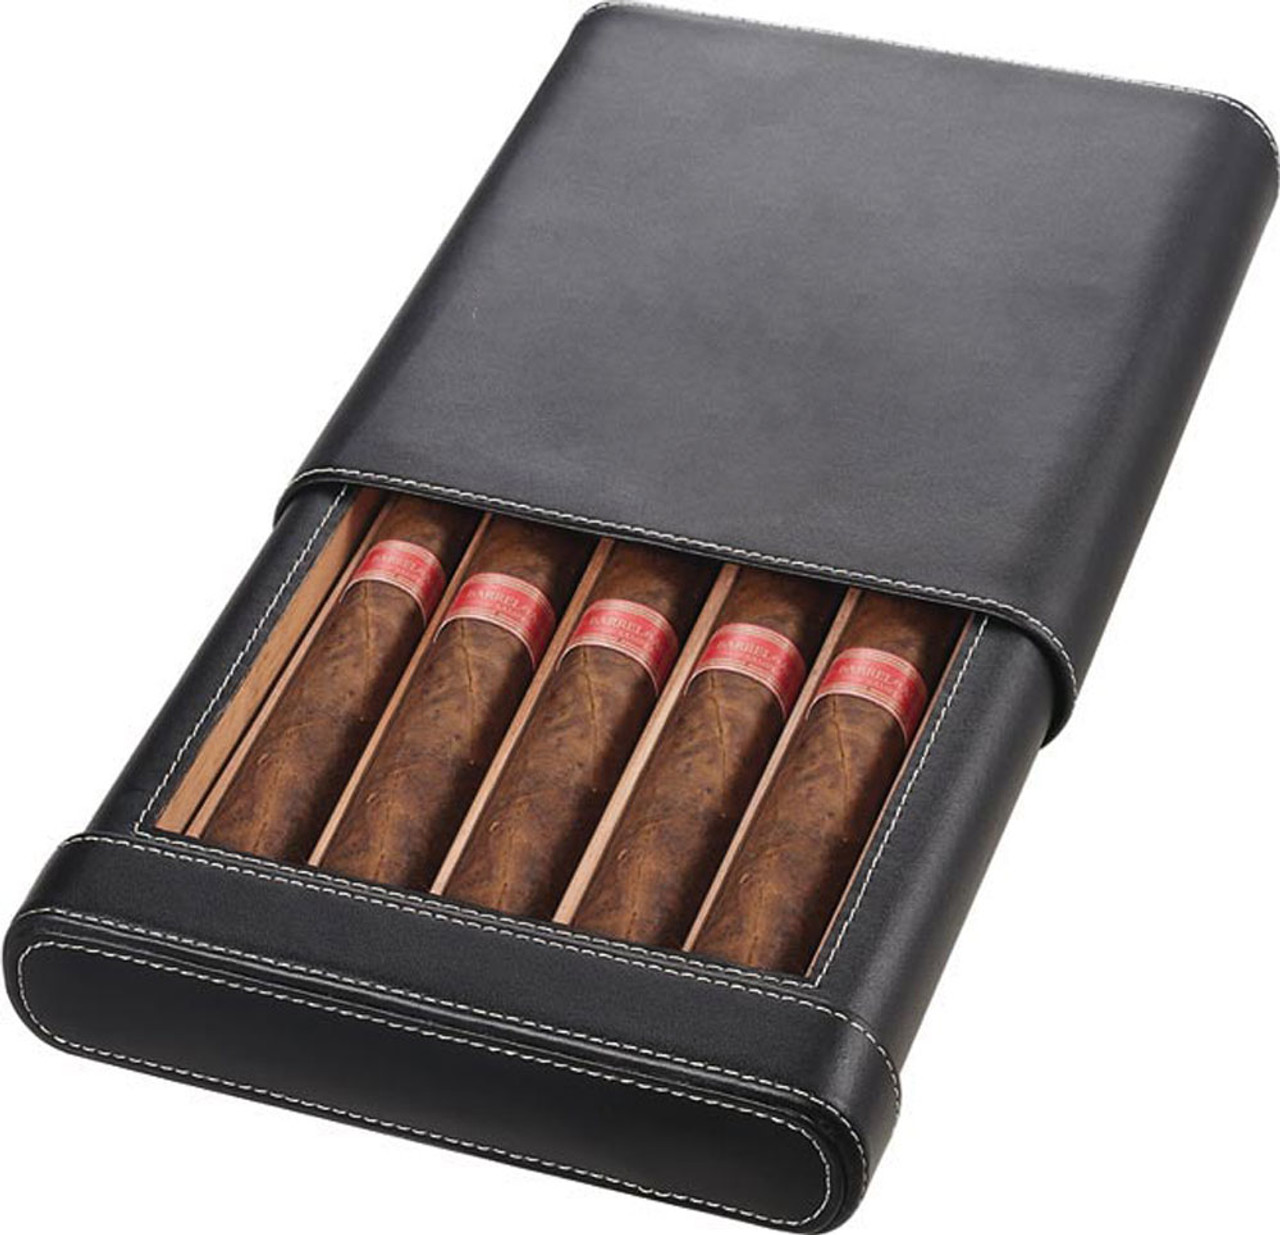 Visol Rennes Black Leather Cigar Case - Holds 5 Cigars - VCASE500